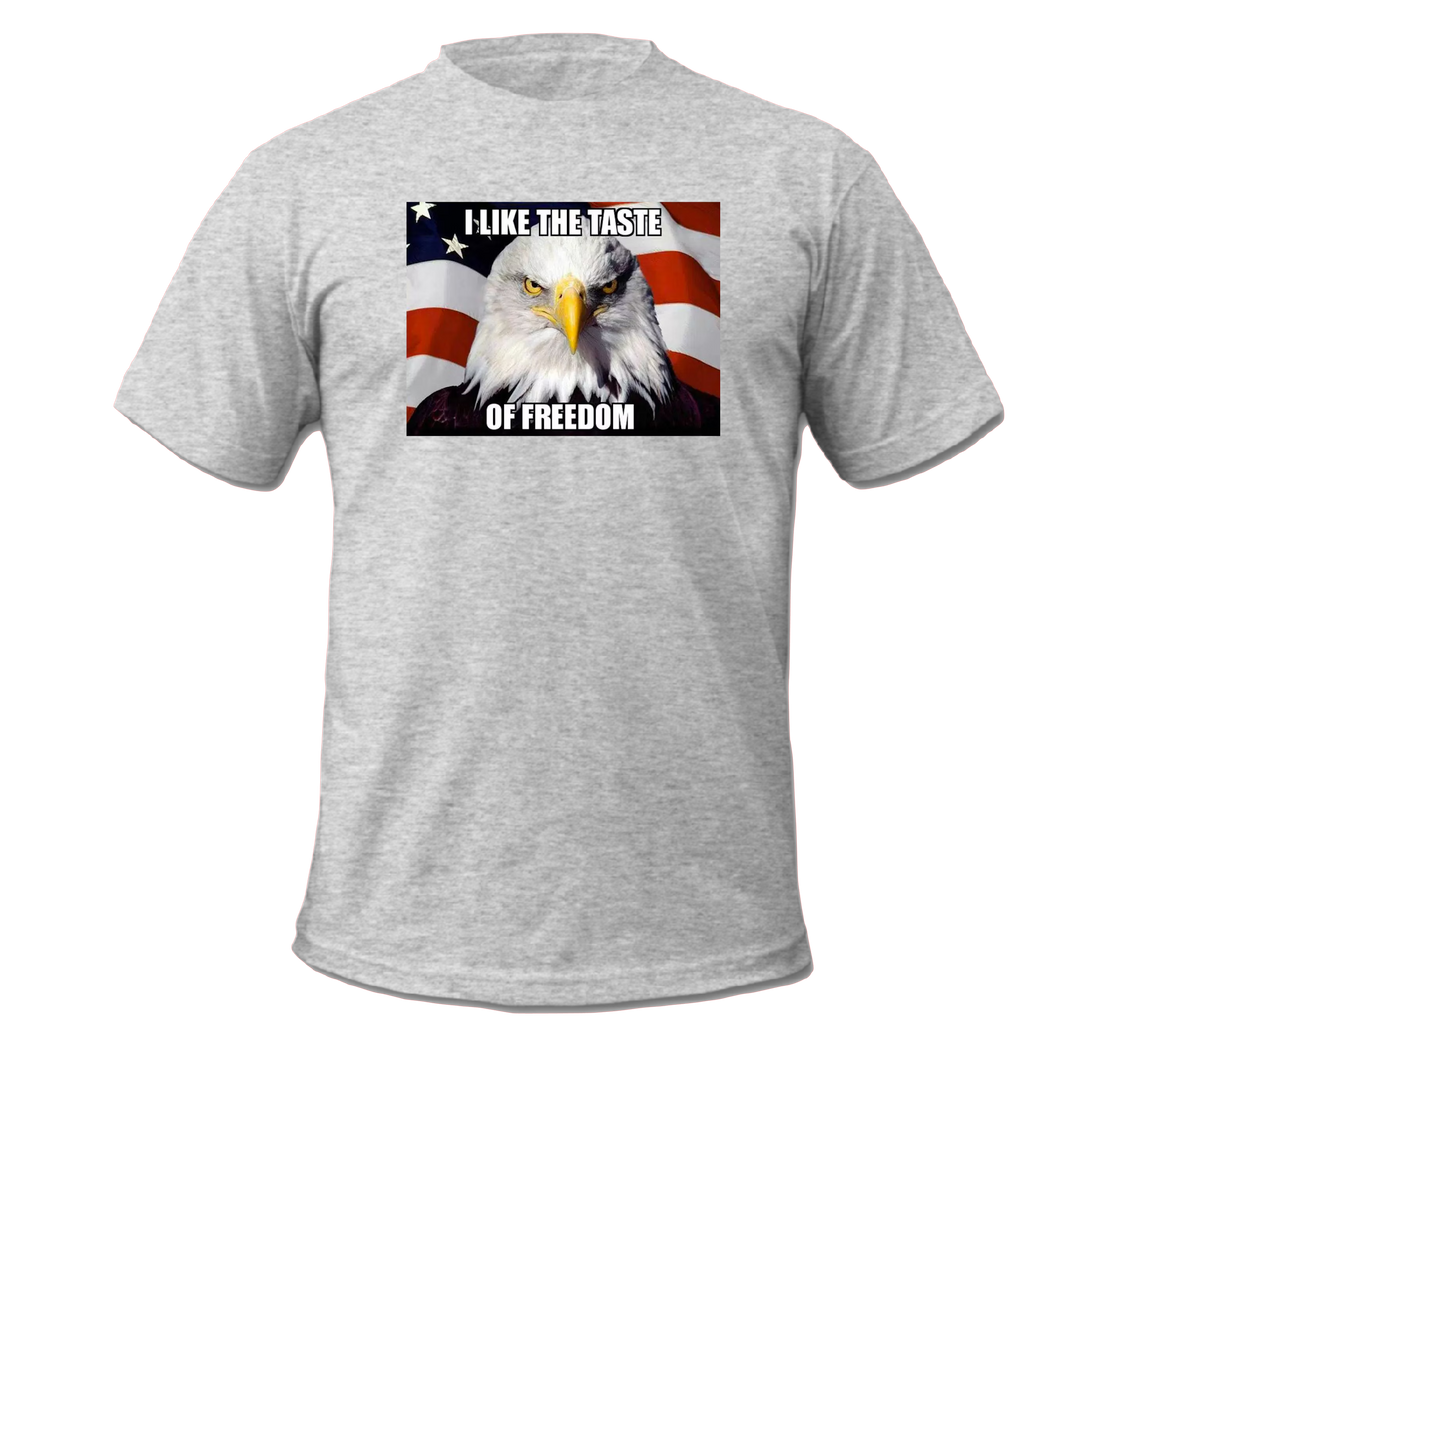 I Like the Taste Of Freedom - Unisex Short Sleeve T-shirt